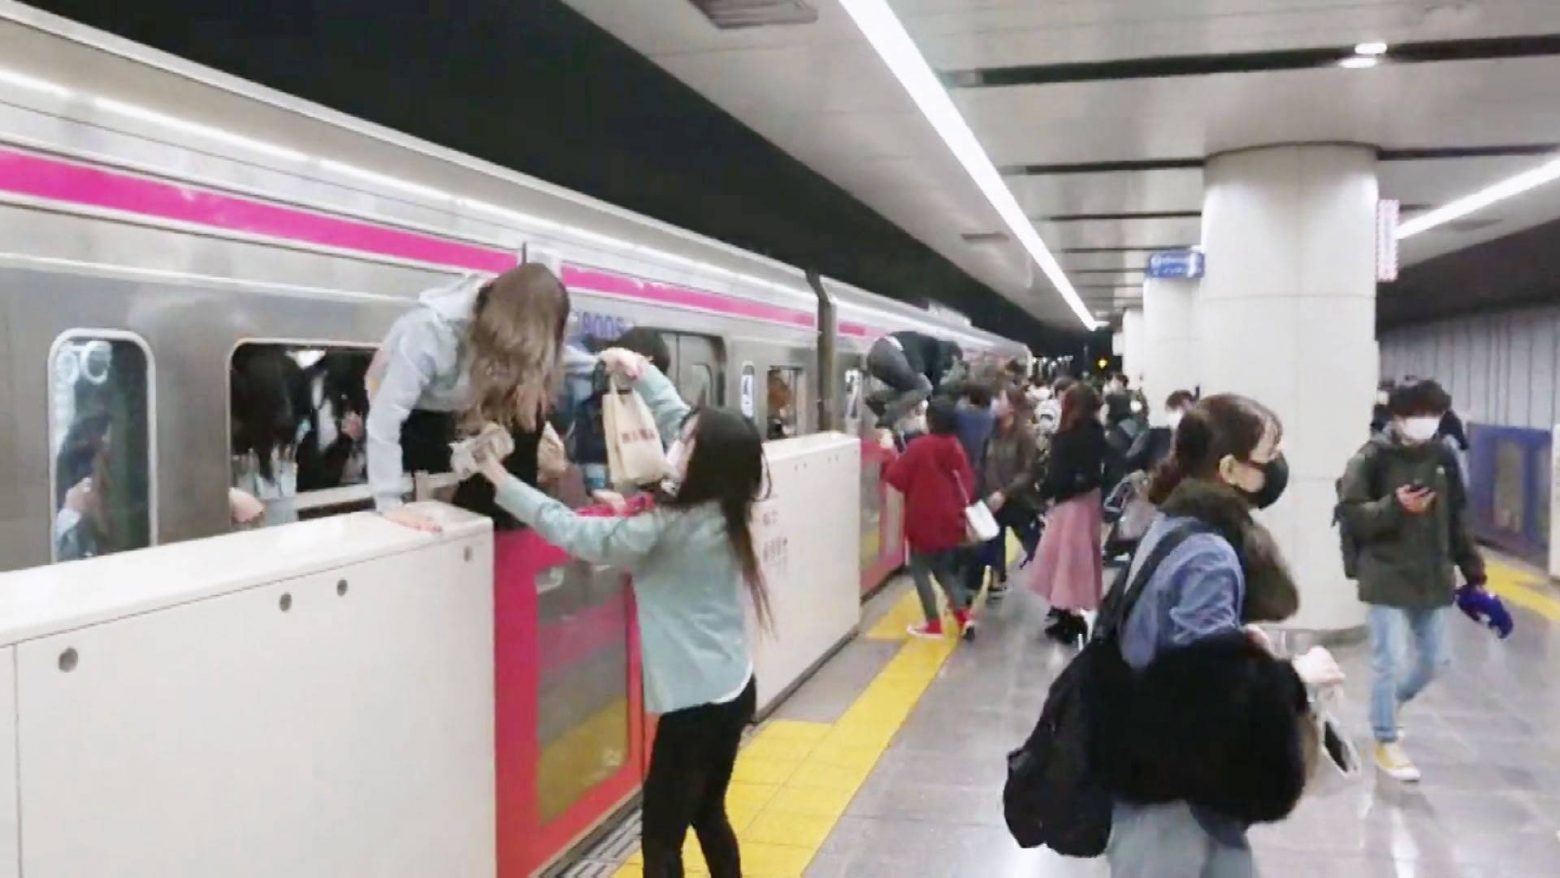 Ιαπωνία - Επίθεση με μαχαίρι και εύφλεκτο υγρό σε τρένο - Από τα παράθυρα έβγαιναν οι επιβάτες, 15 τραυματίες